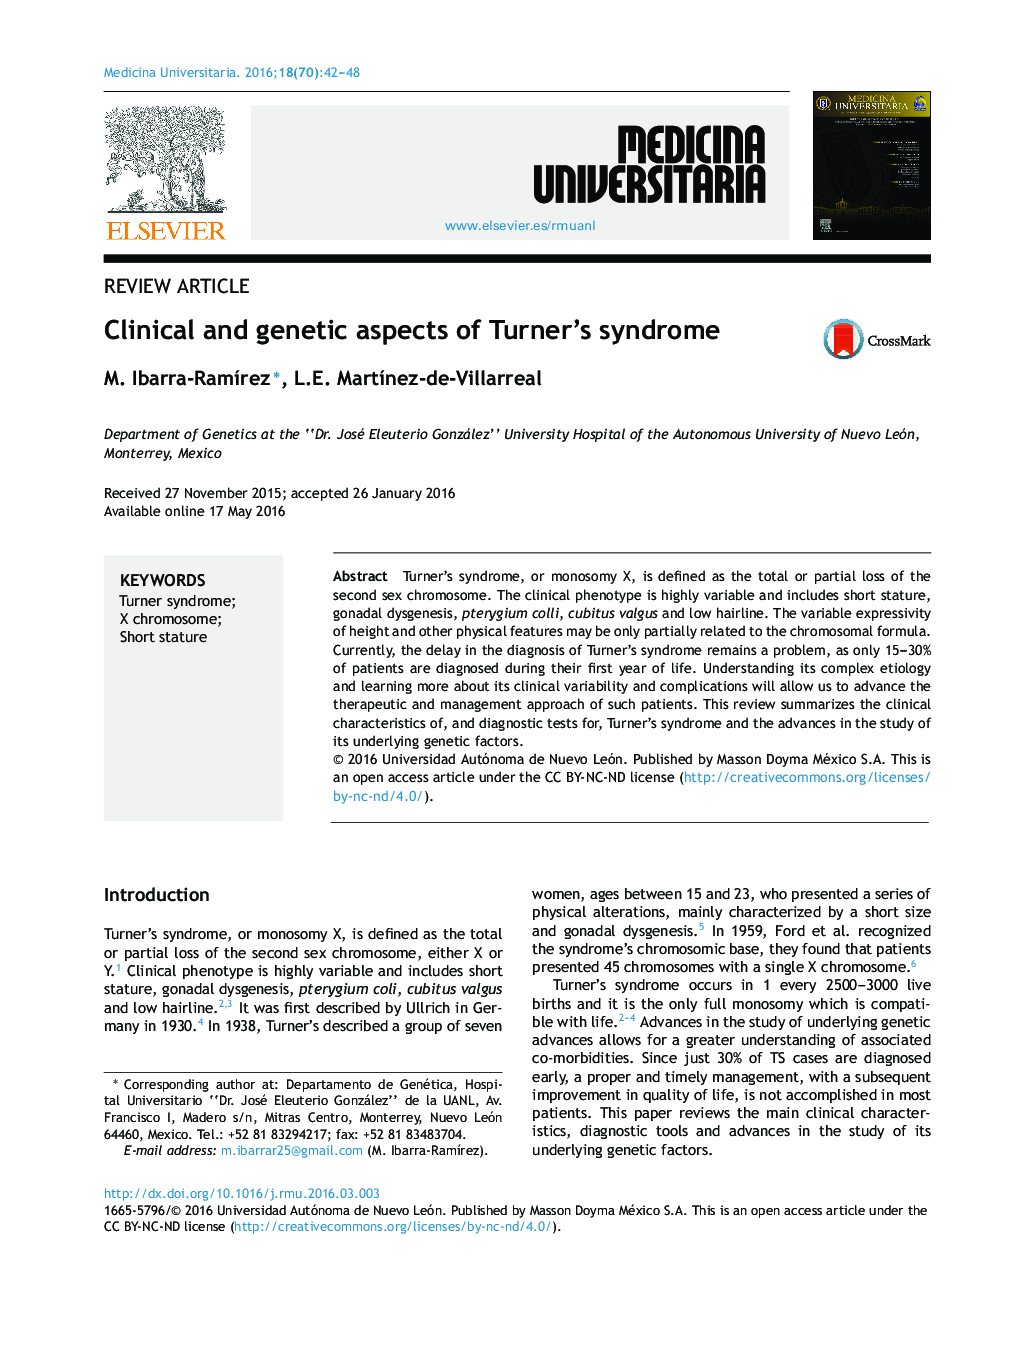 جنبه های بالینی و ژنتیکی سندرم ترنر 